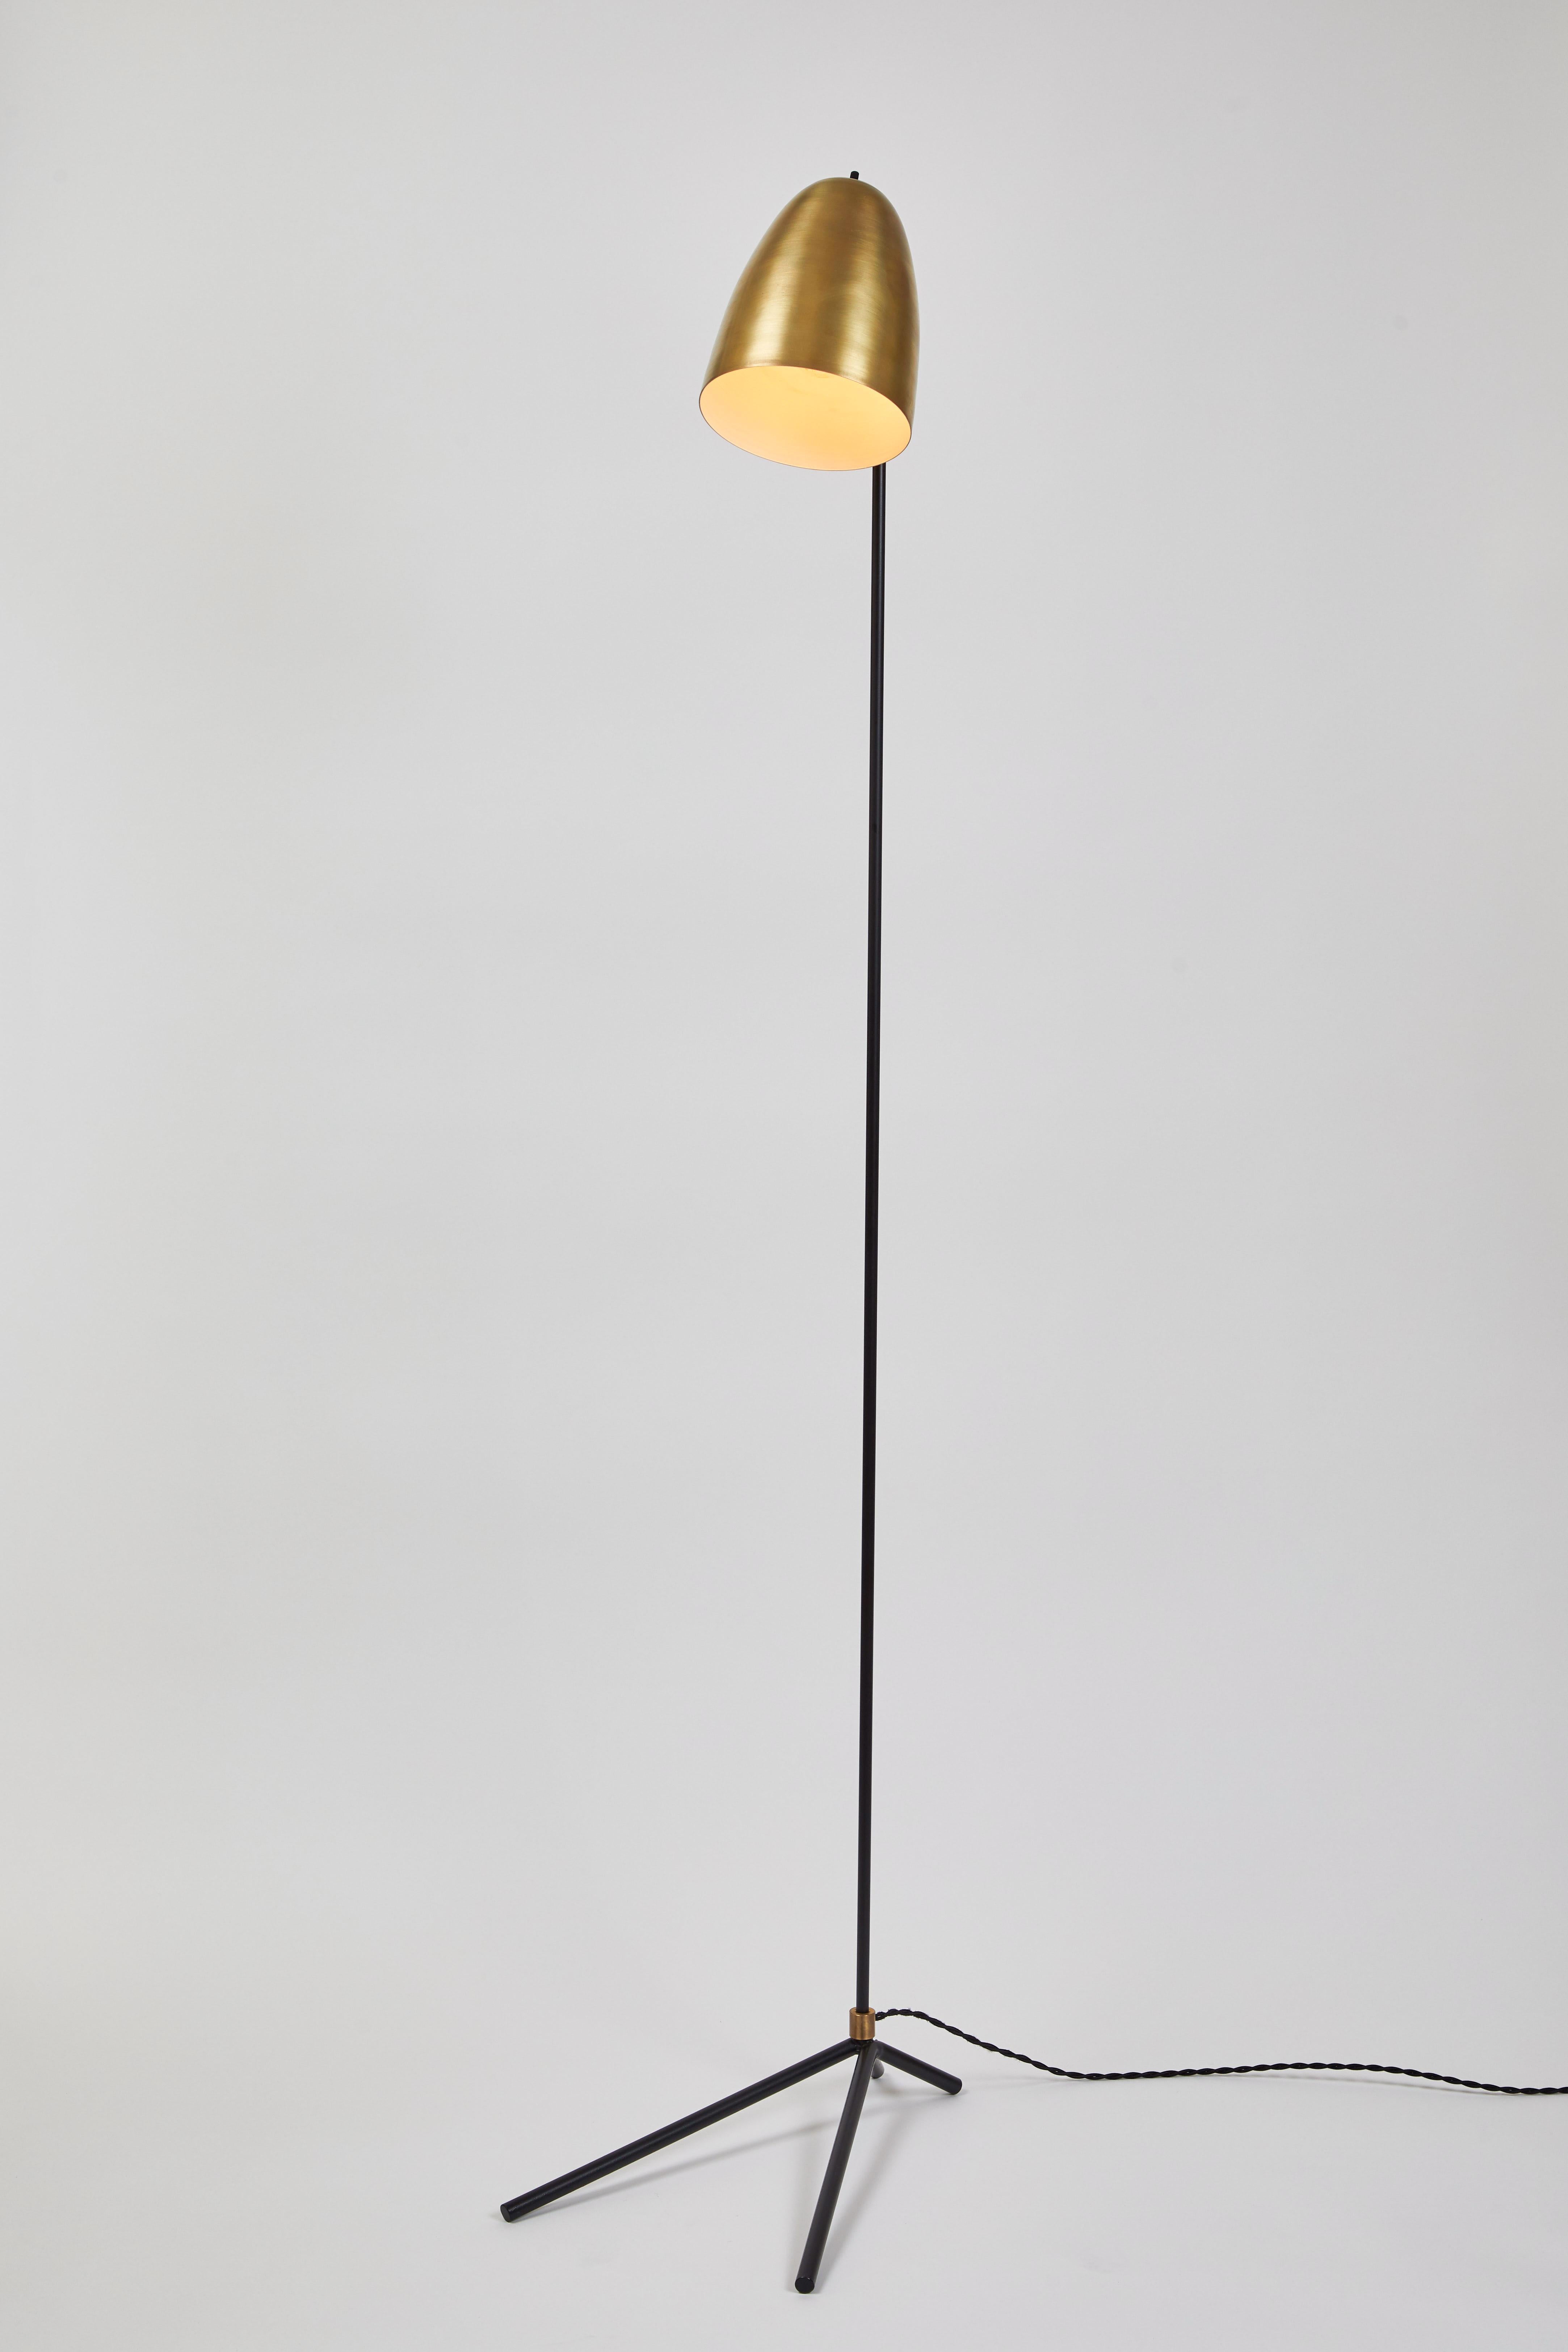 Lampadaire 'ORO' en laiton et métal. 

Fabriqué à la main par Alvaro Benitez, designer et professionnel de l'éclairage basé à Los Angeles, ce lampadaire très raffiné rappelle les designs italiens emblématiques du milieu du siècle d'Arteluce et de